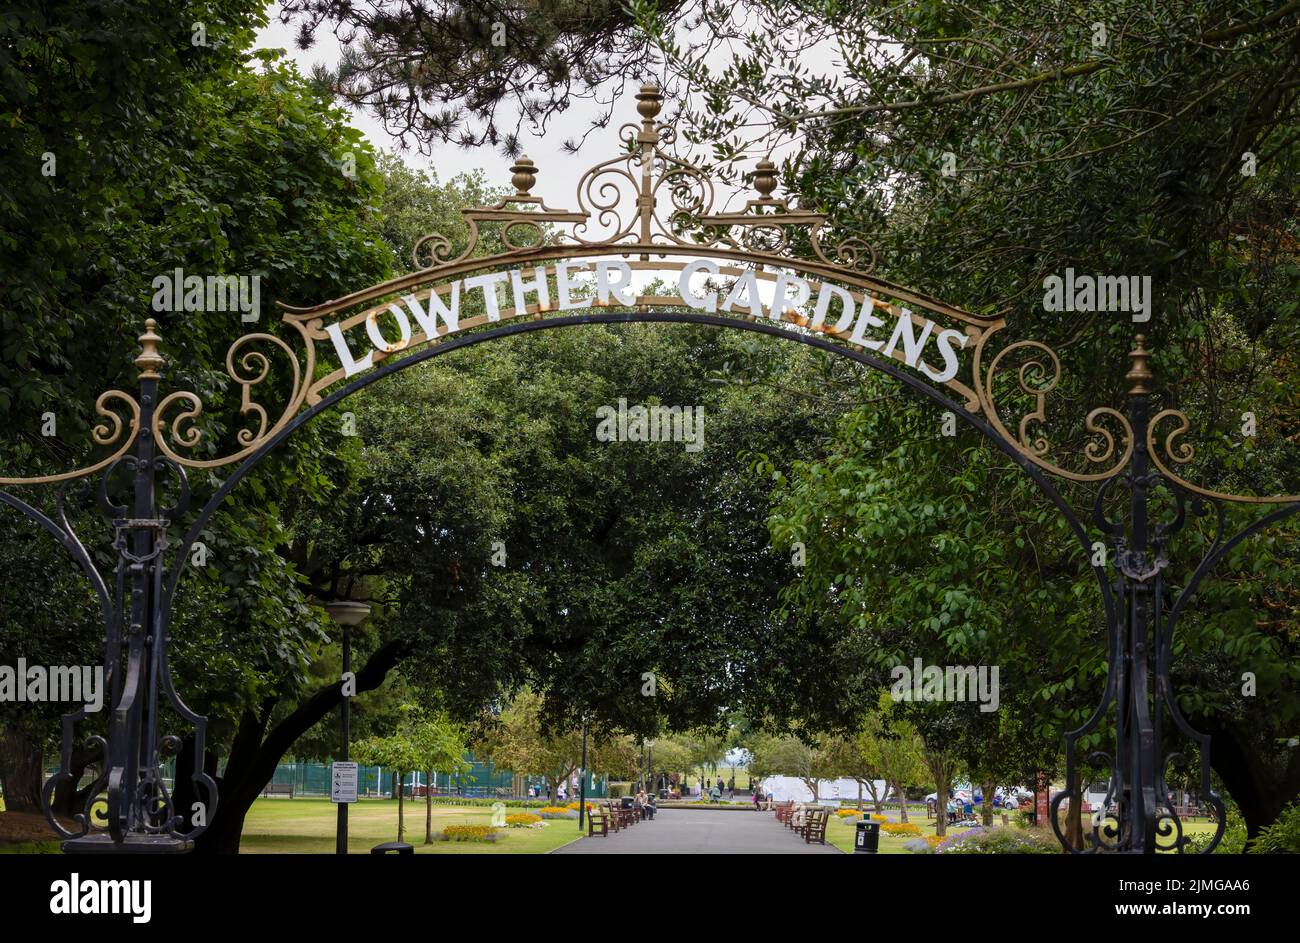 Il cartello in ferro battuto, emblema dei Lowther Gardens, segna un ingresso nei suddetti Lowther Gardens a Lytham St Annes, Lancashire, Regno Unito Foto Stock